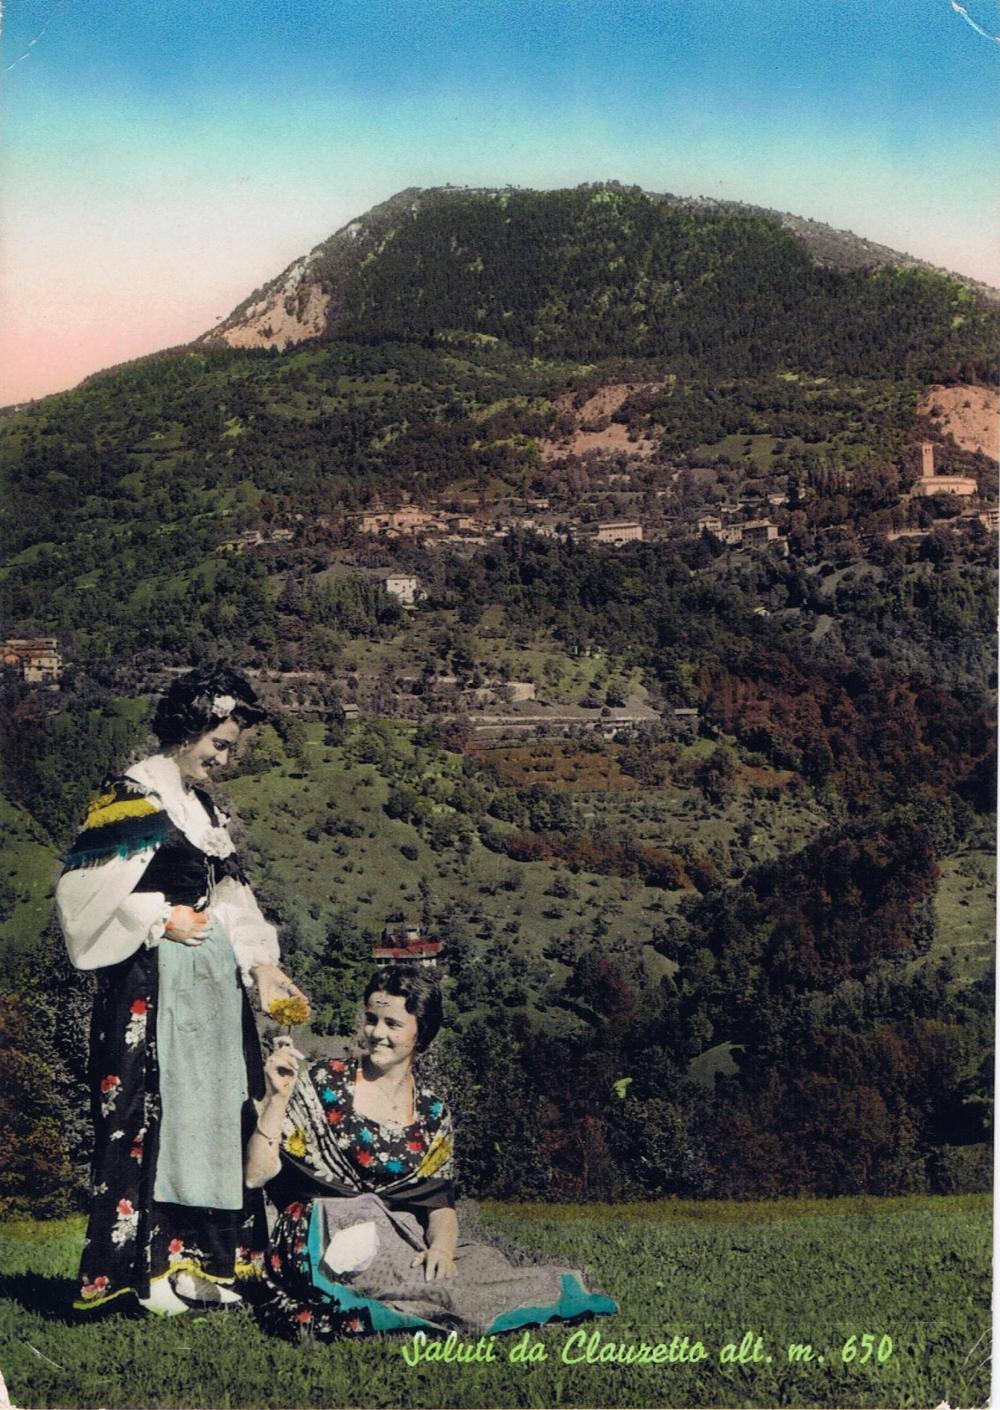 Donne in costume tradizionale e monte Pala, anni '60